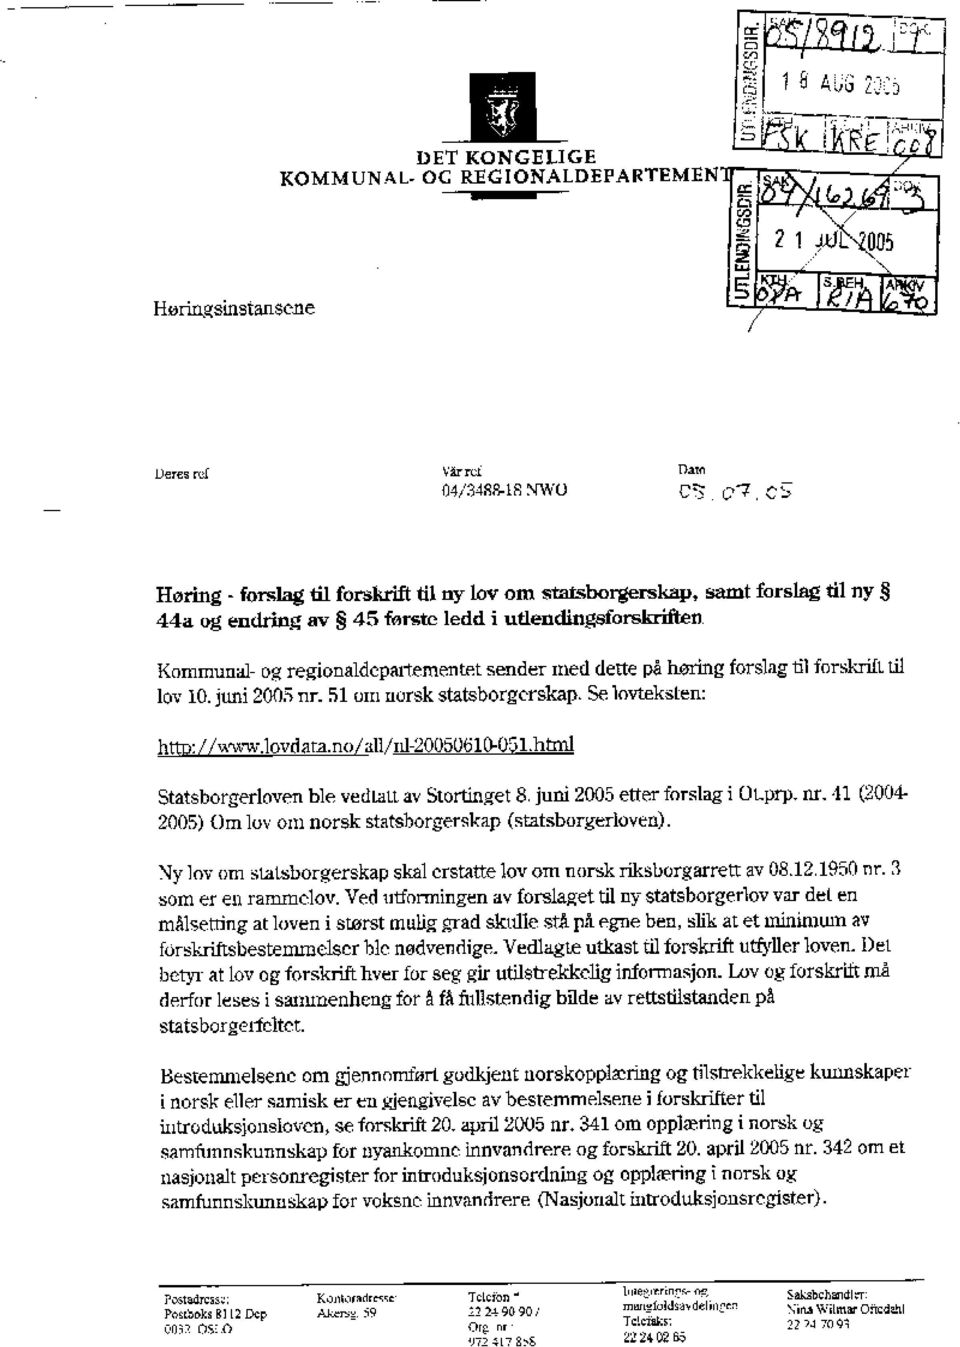 Se løvteksten: htto://uwwlovdam.no/all/nf20050610.051html Statsborgerloven ble vedtatt av Stortinget 8. juni 2005 etter forslag i OLprp, nr.